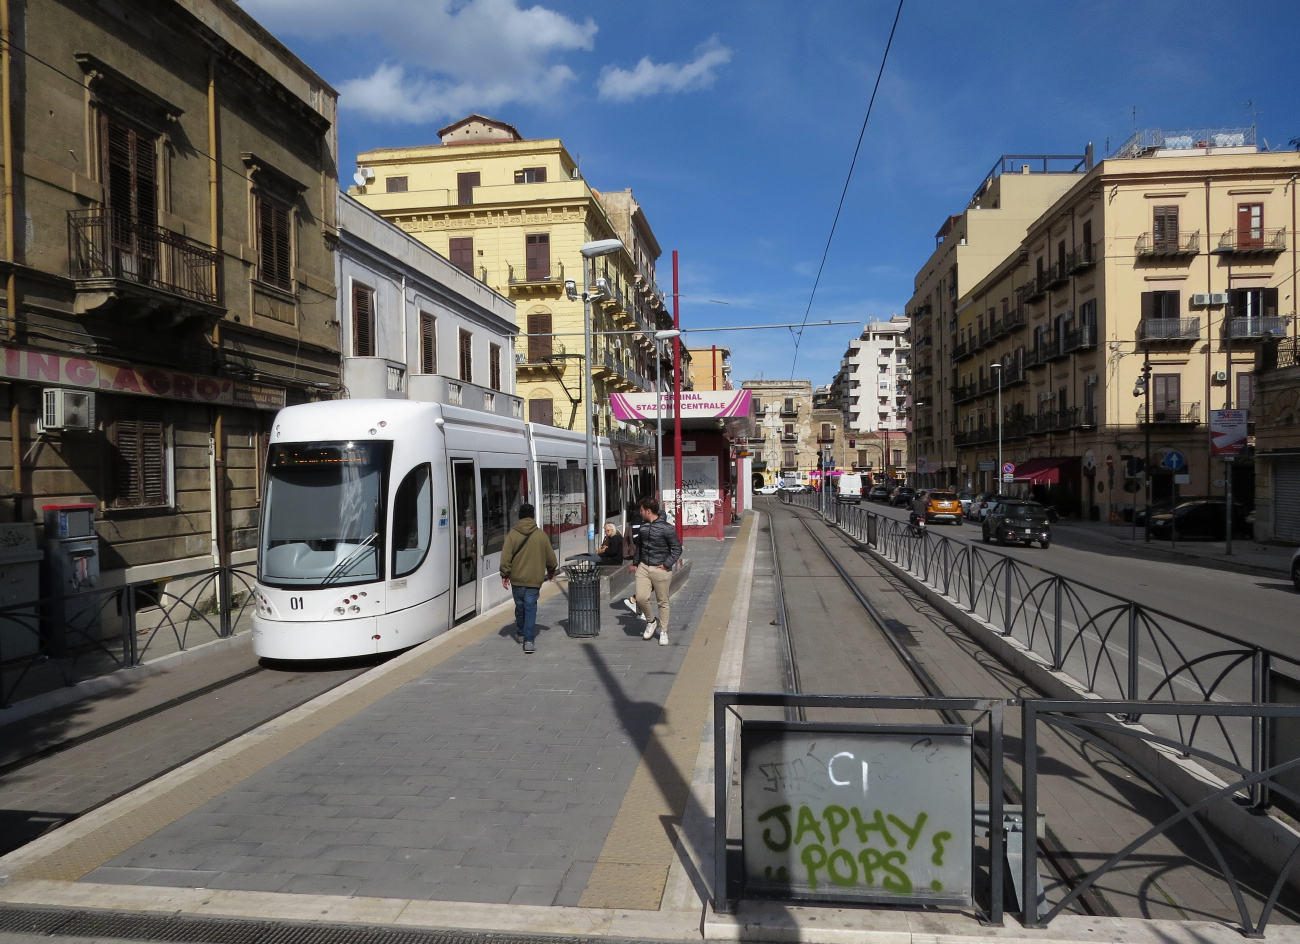 Палермо, Bombardier Flexity Outlook № 1; Палермо — Трамвайные линии и инфраструктура